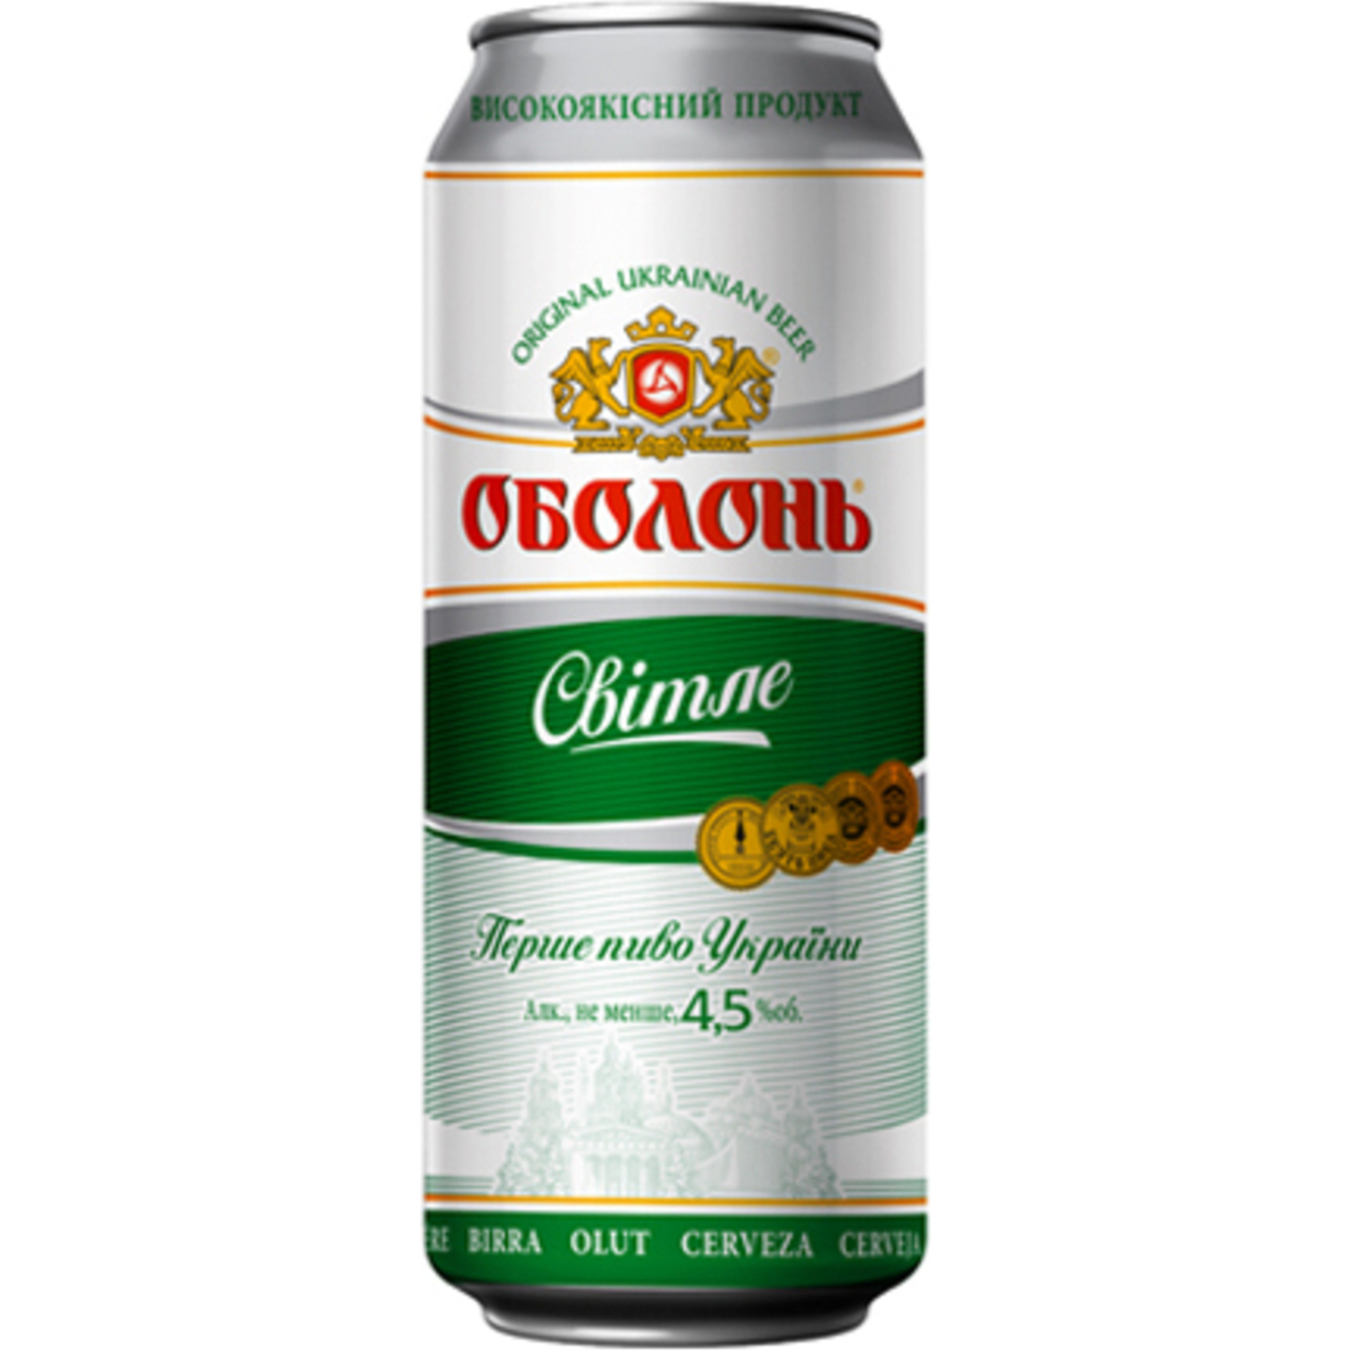 Obolon Light Beer 4,5% 0,5l